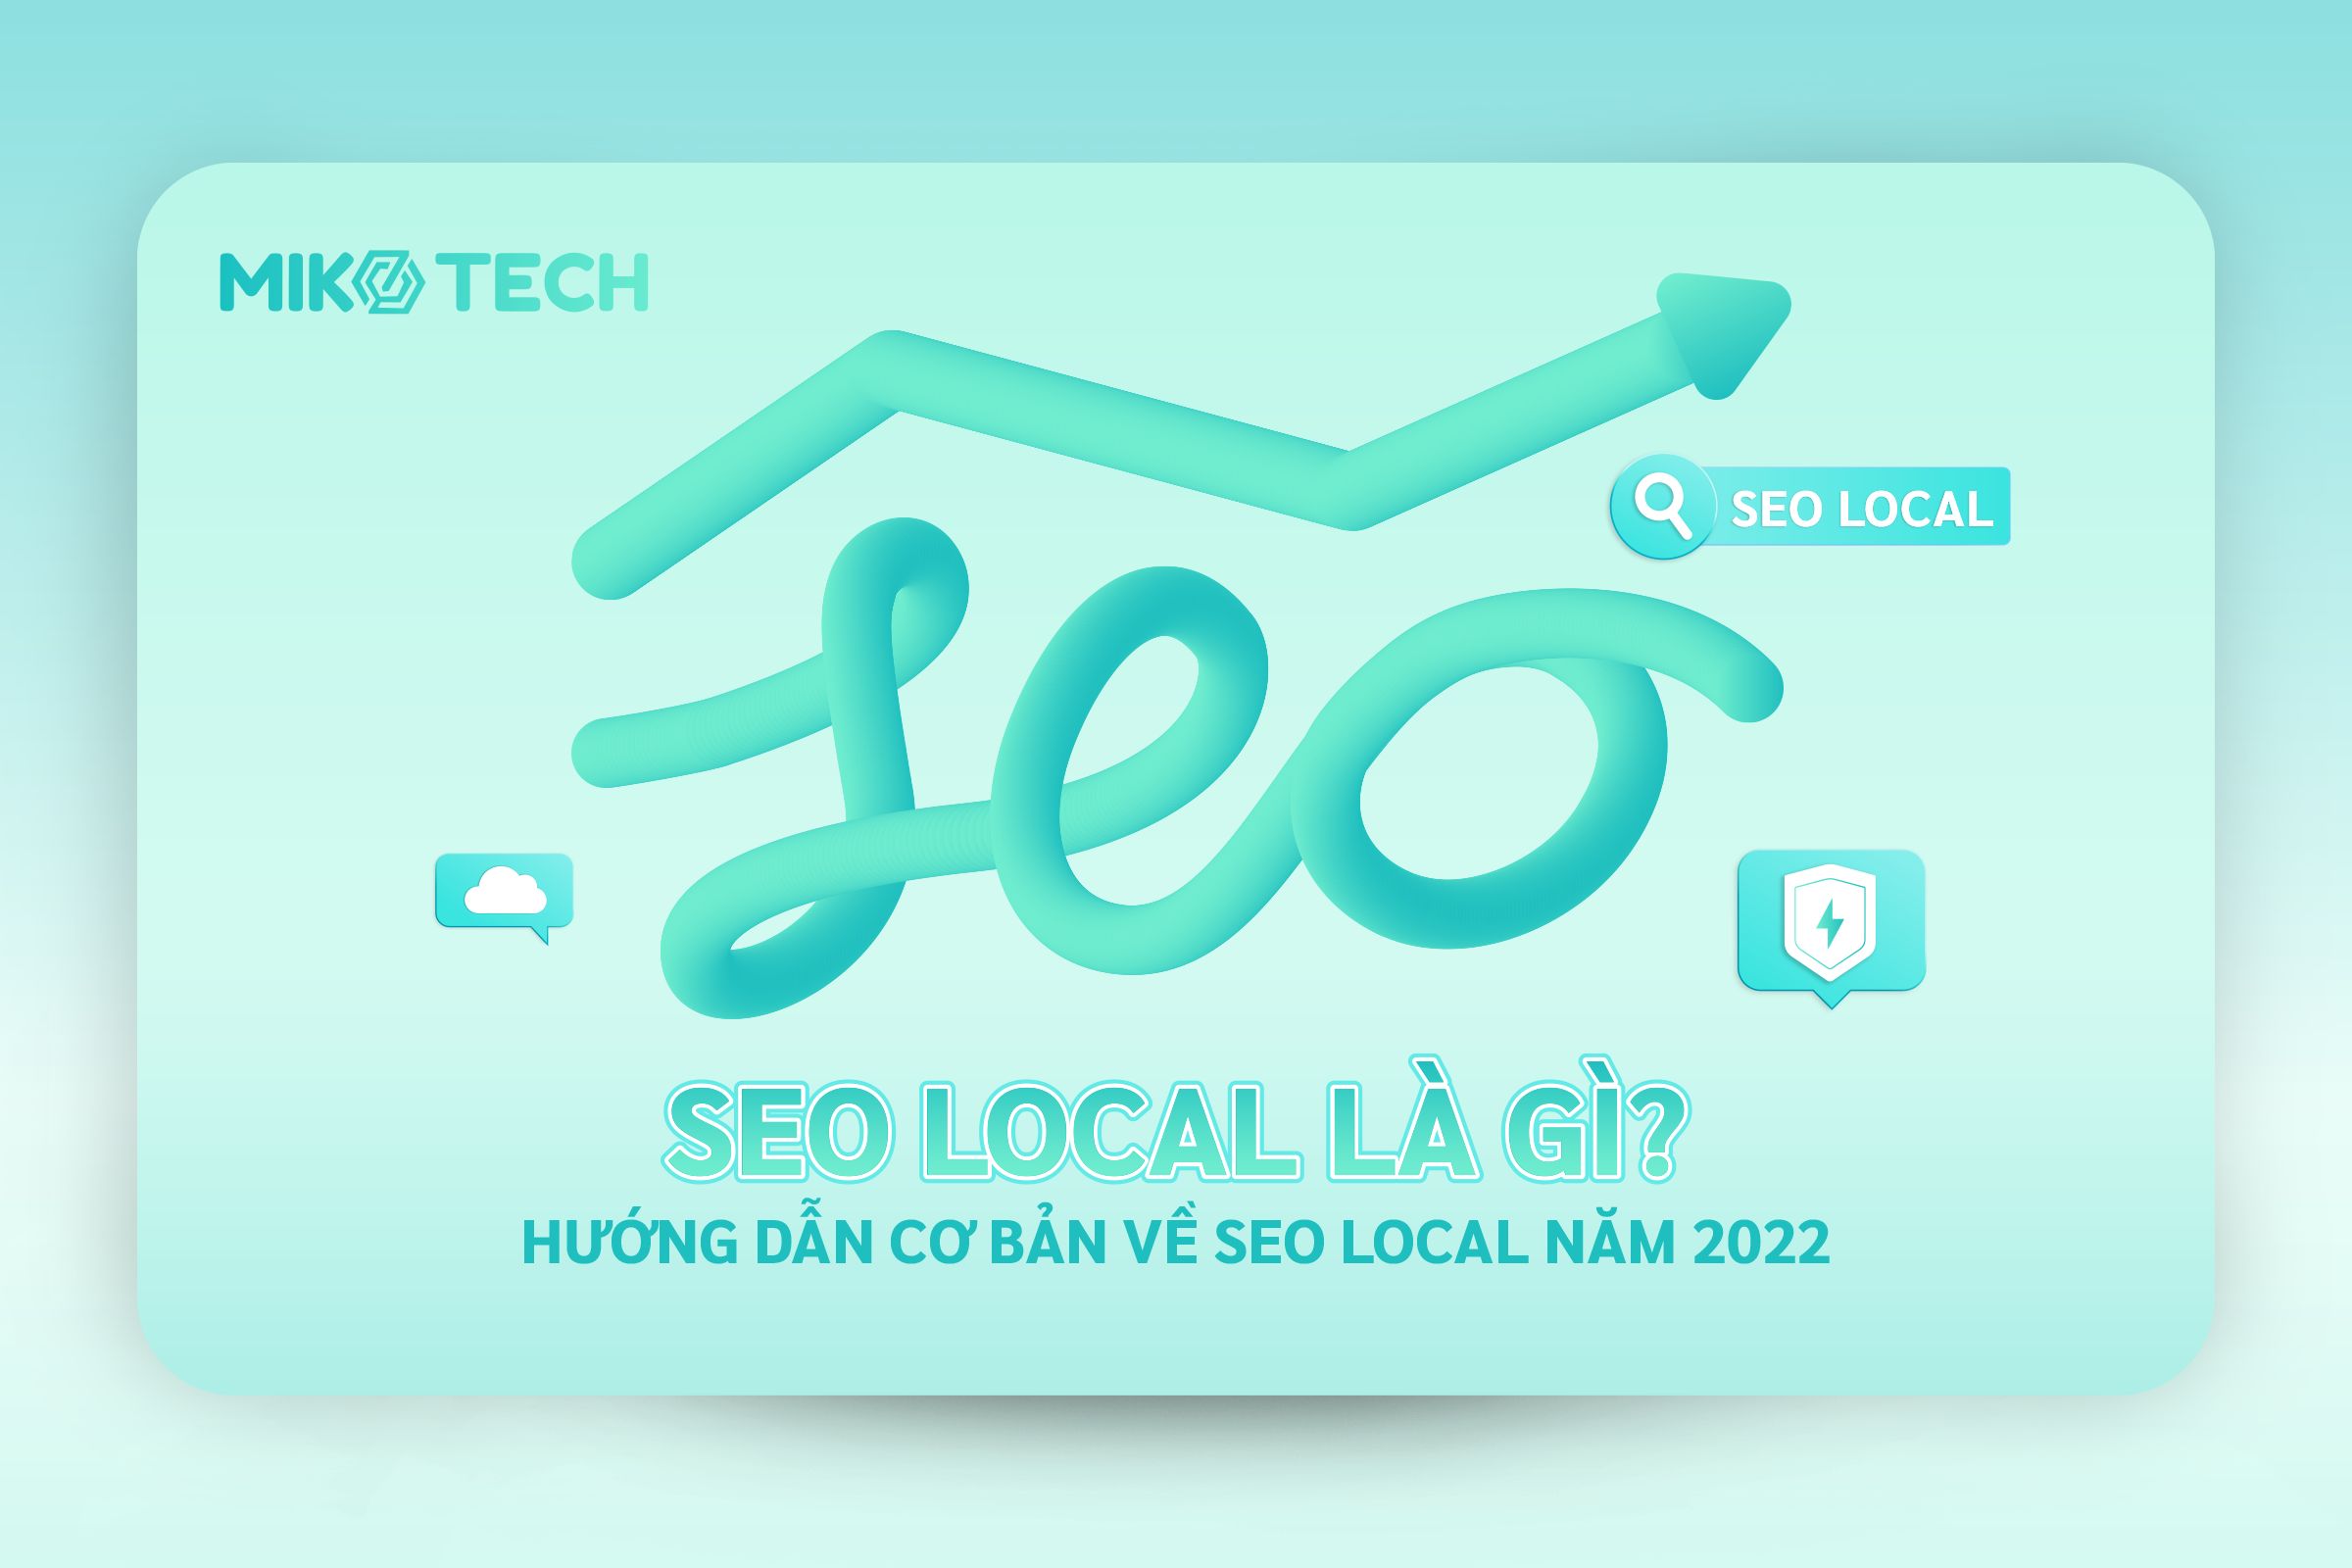 SEO Local là gì? Hướng dẫn cơ bản về SEO Local năm 2022